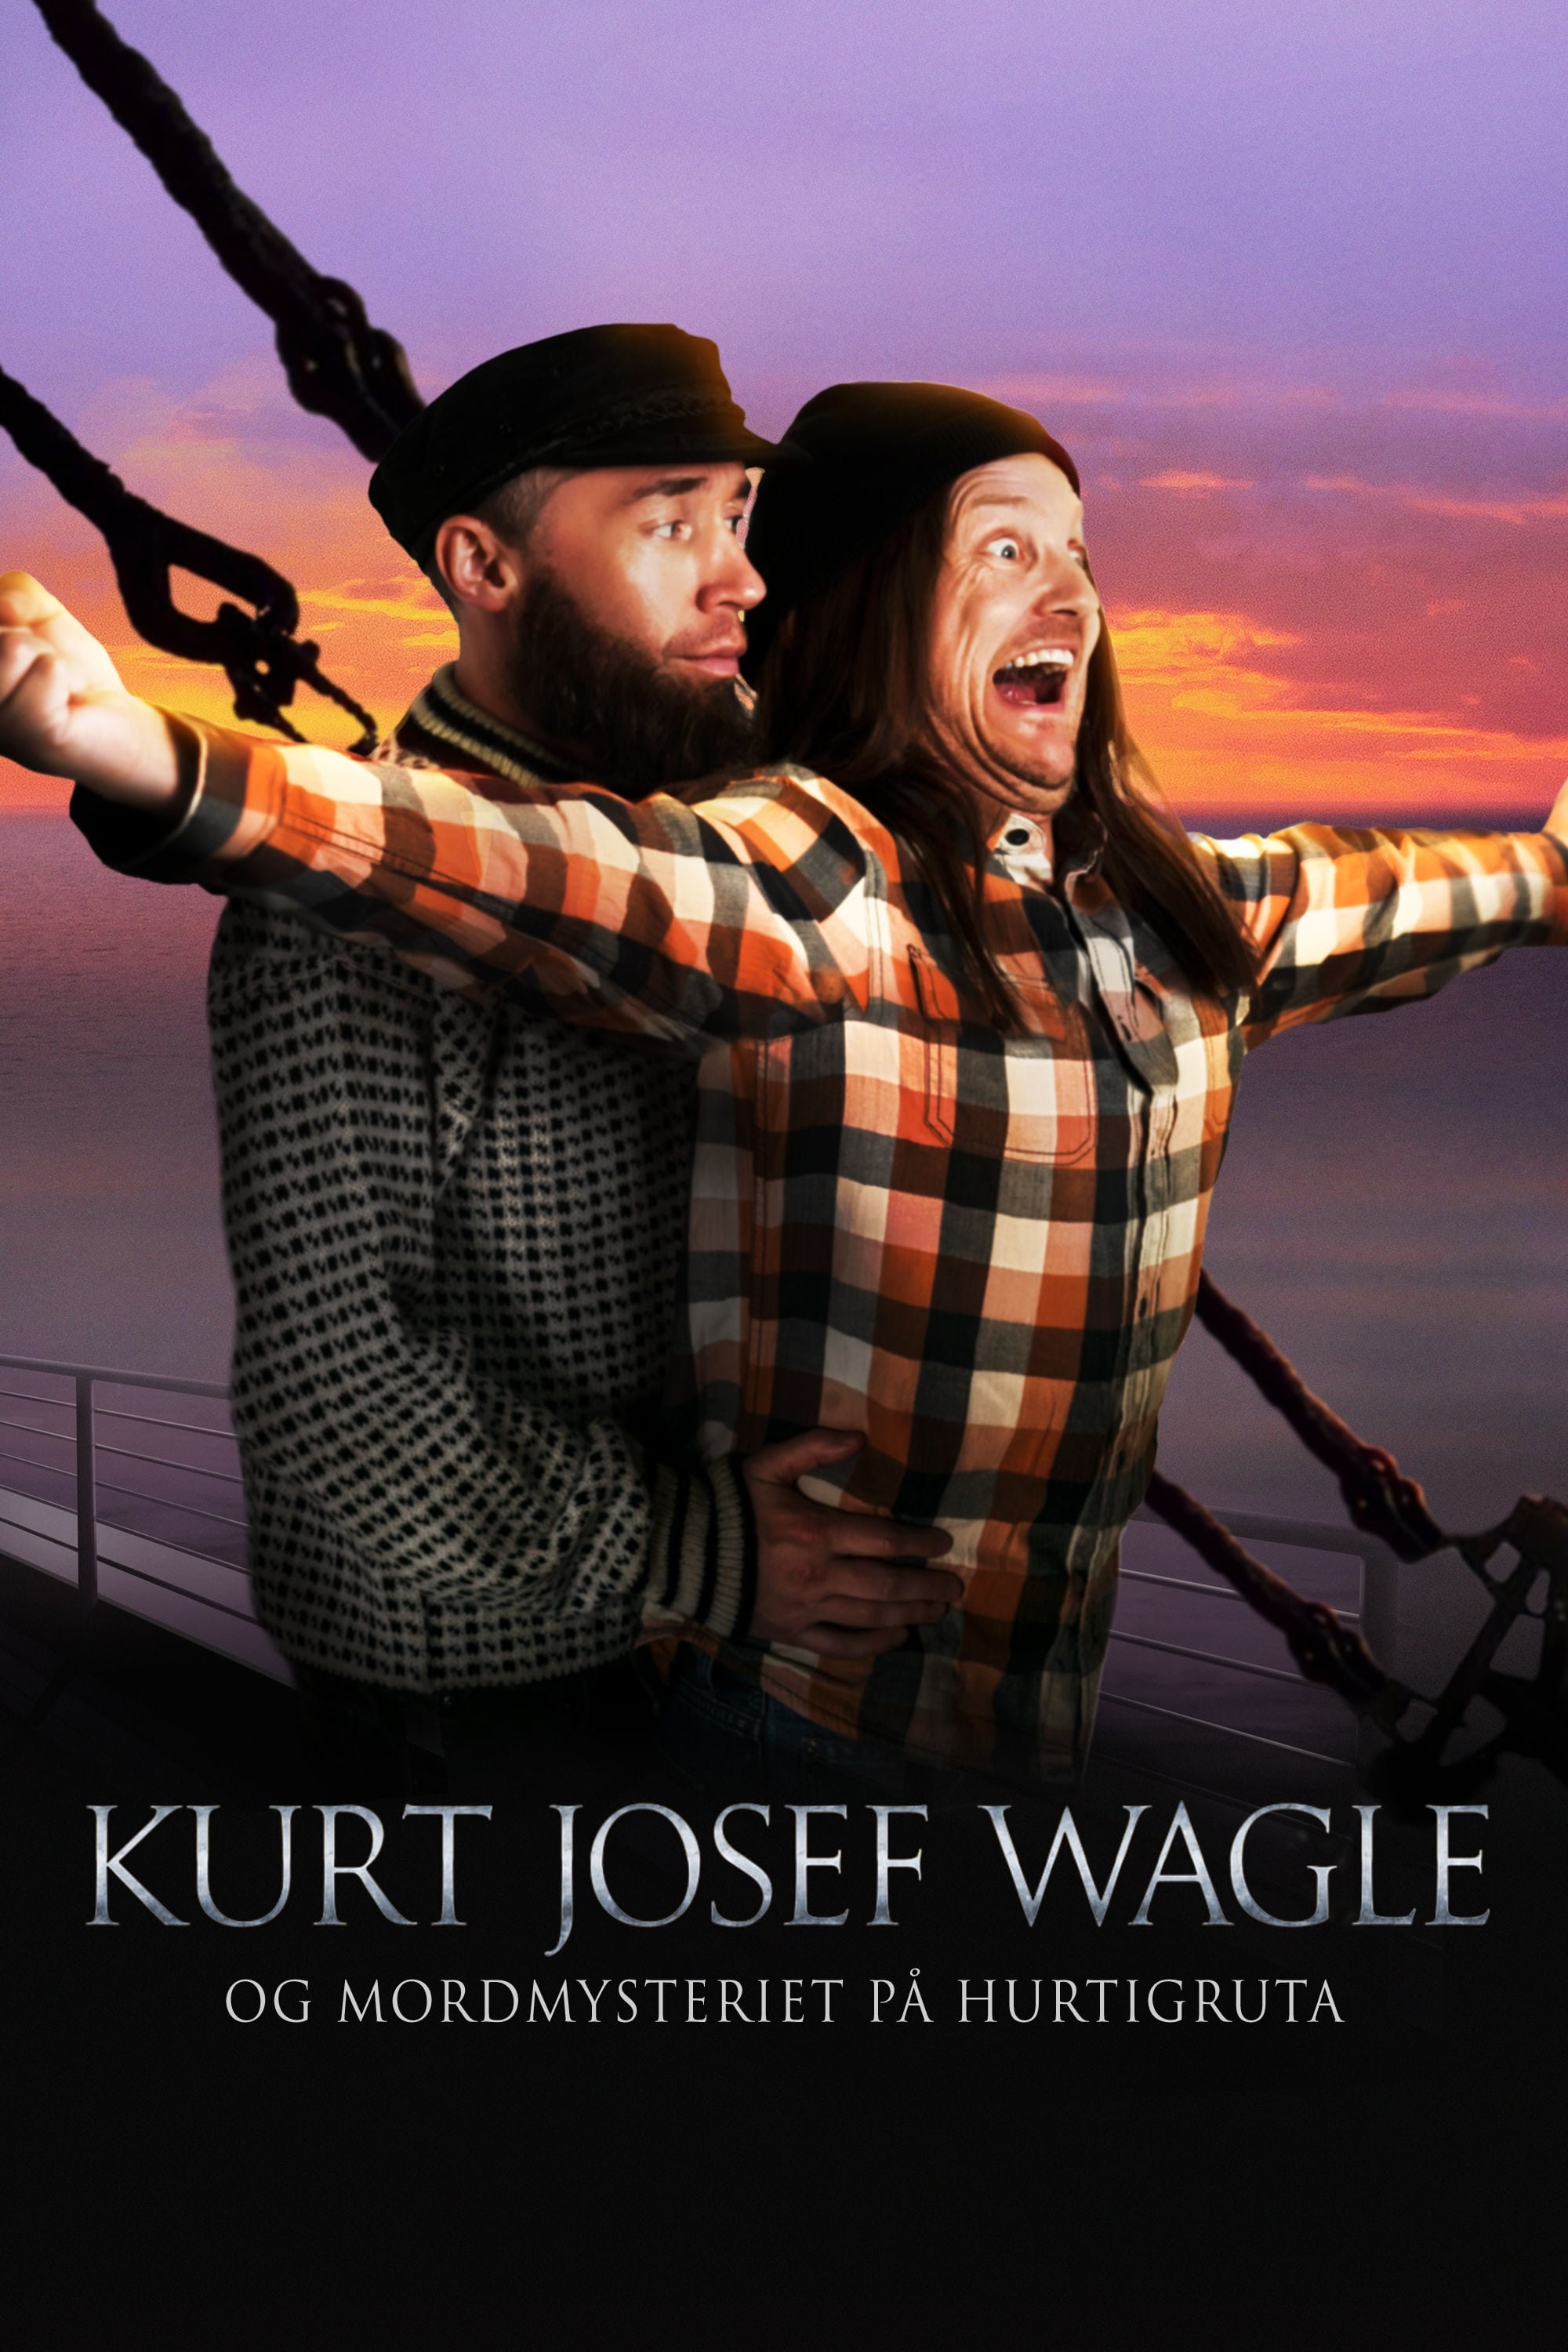 Kurt Josef Wagle og mordmysteriet på Hurtigruta